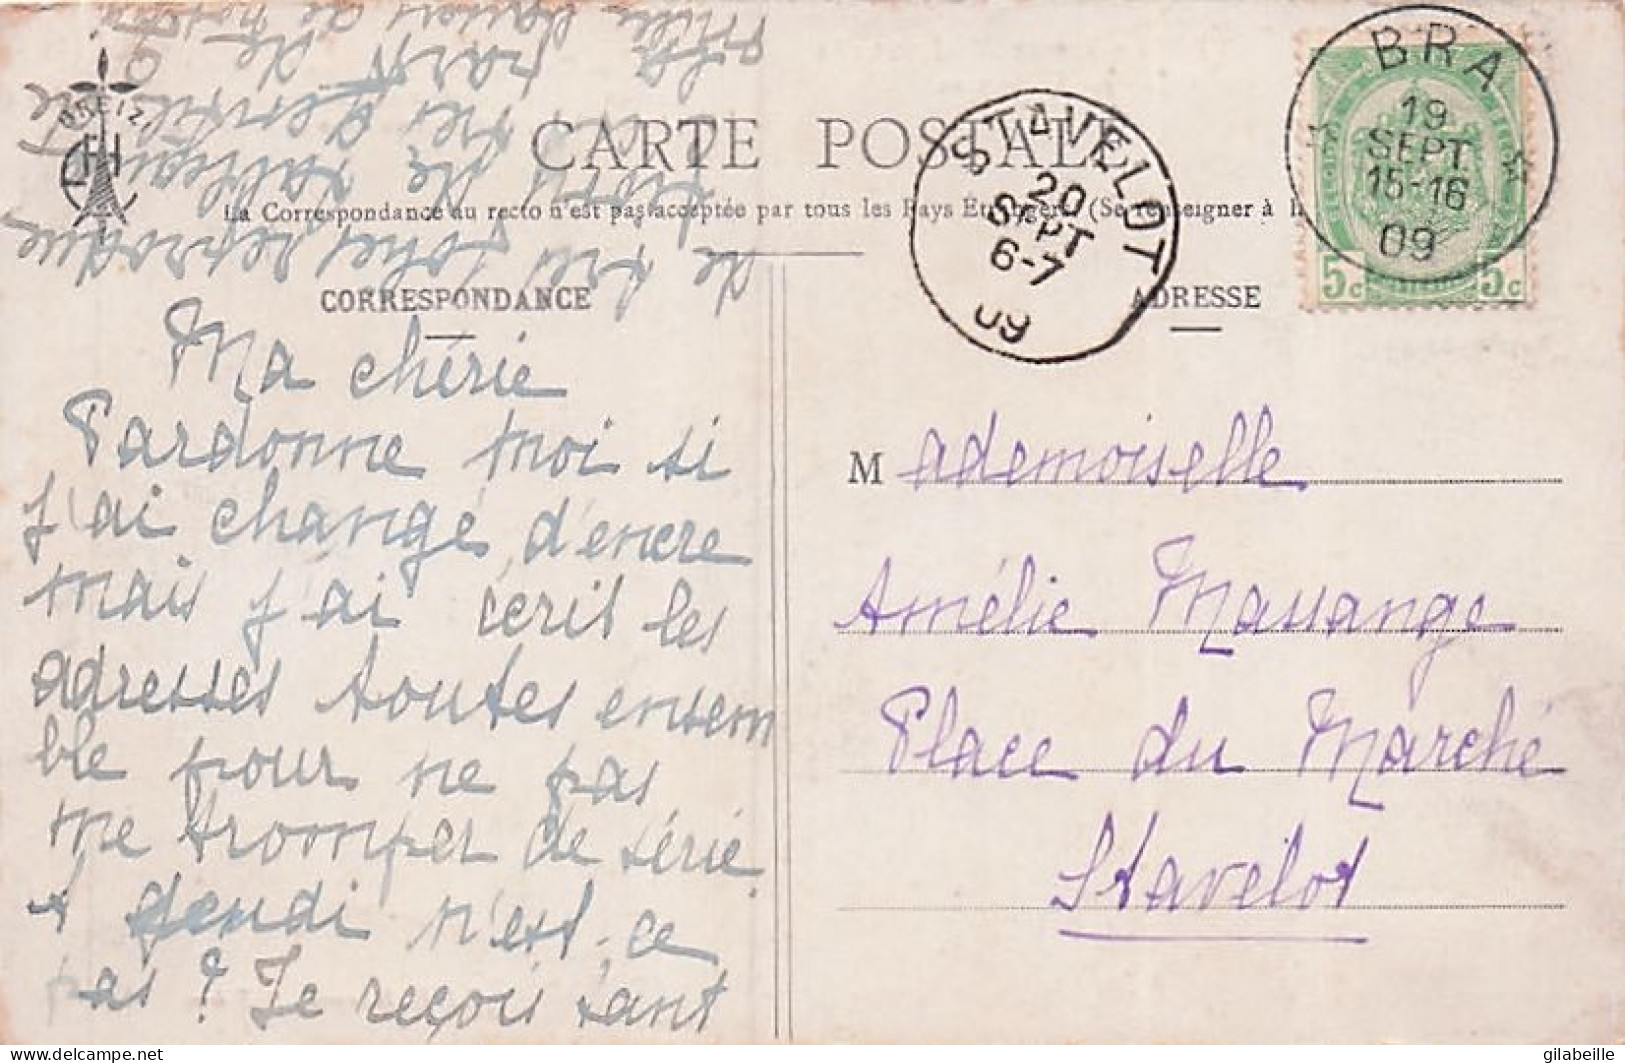 Theatre - Fleur d' Ajonc - Pièce de Th. Botrel - lot 8 cartes - 1909